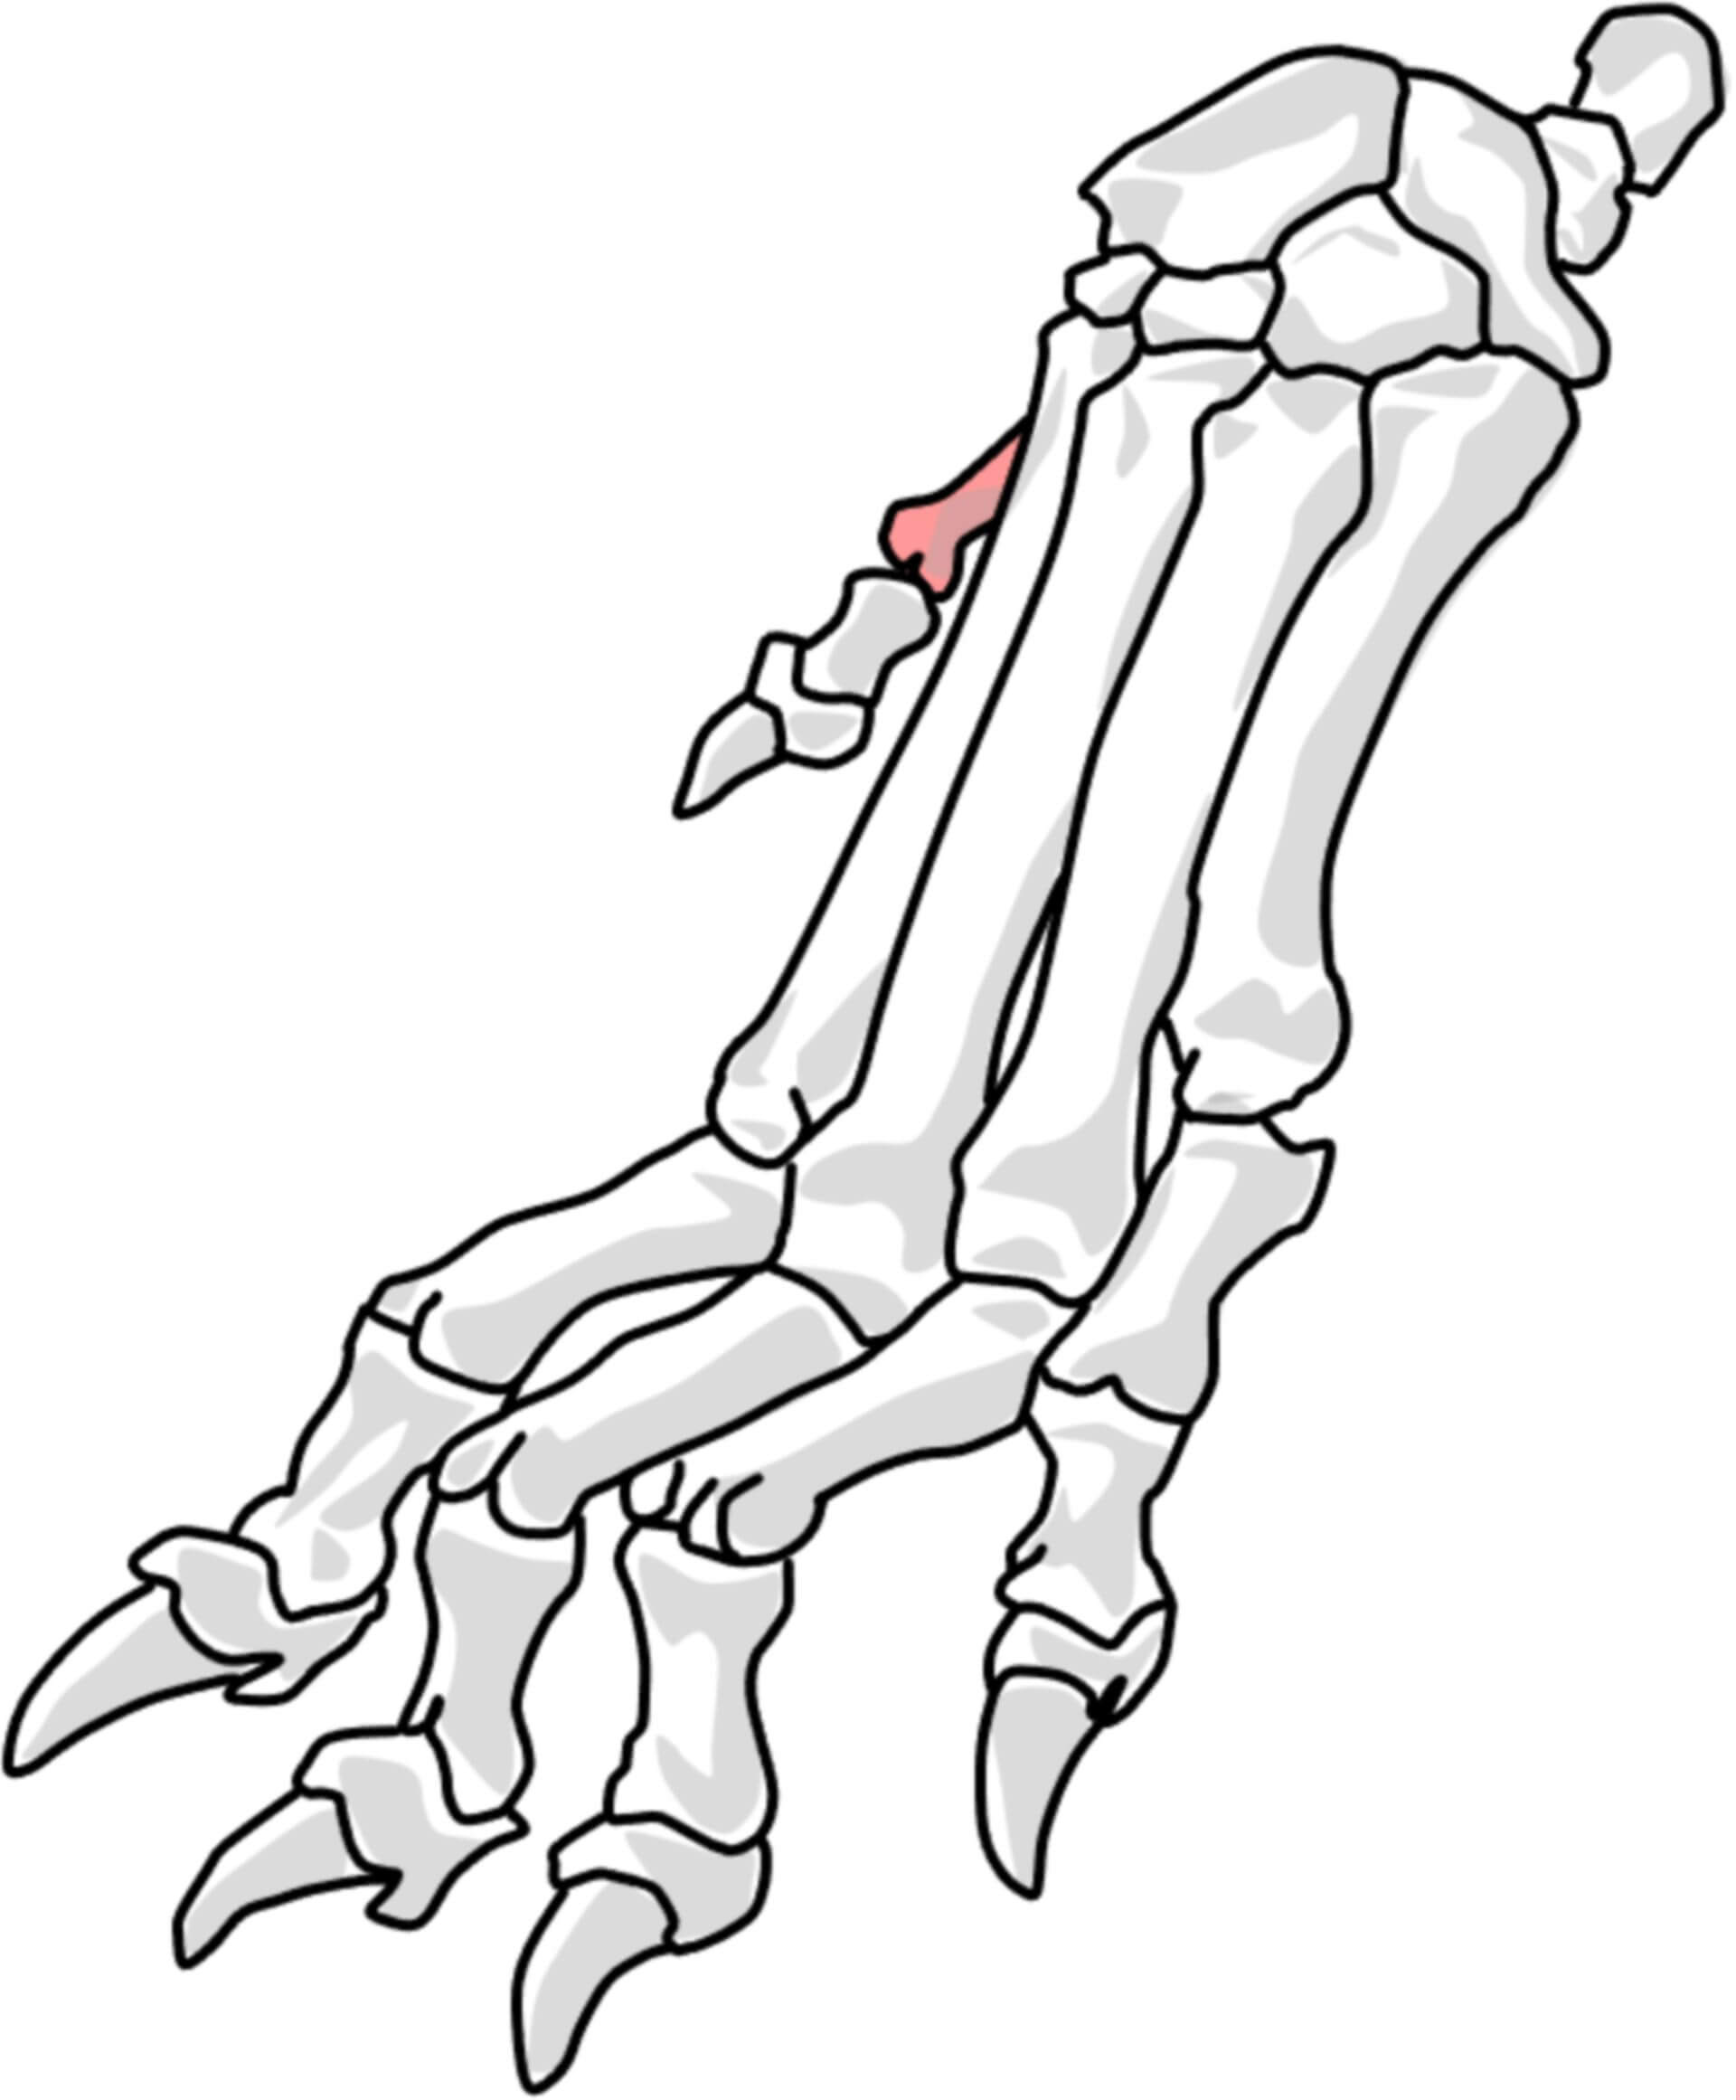 1. Metakarpalknochen beim Hund (© Patrick Messner)